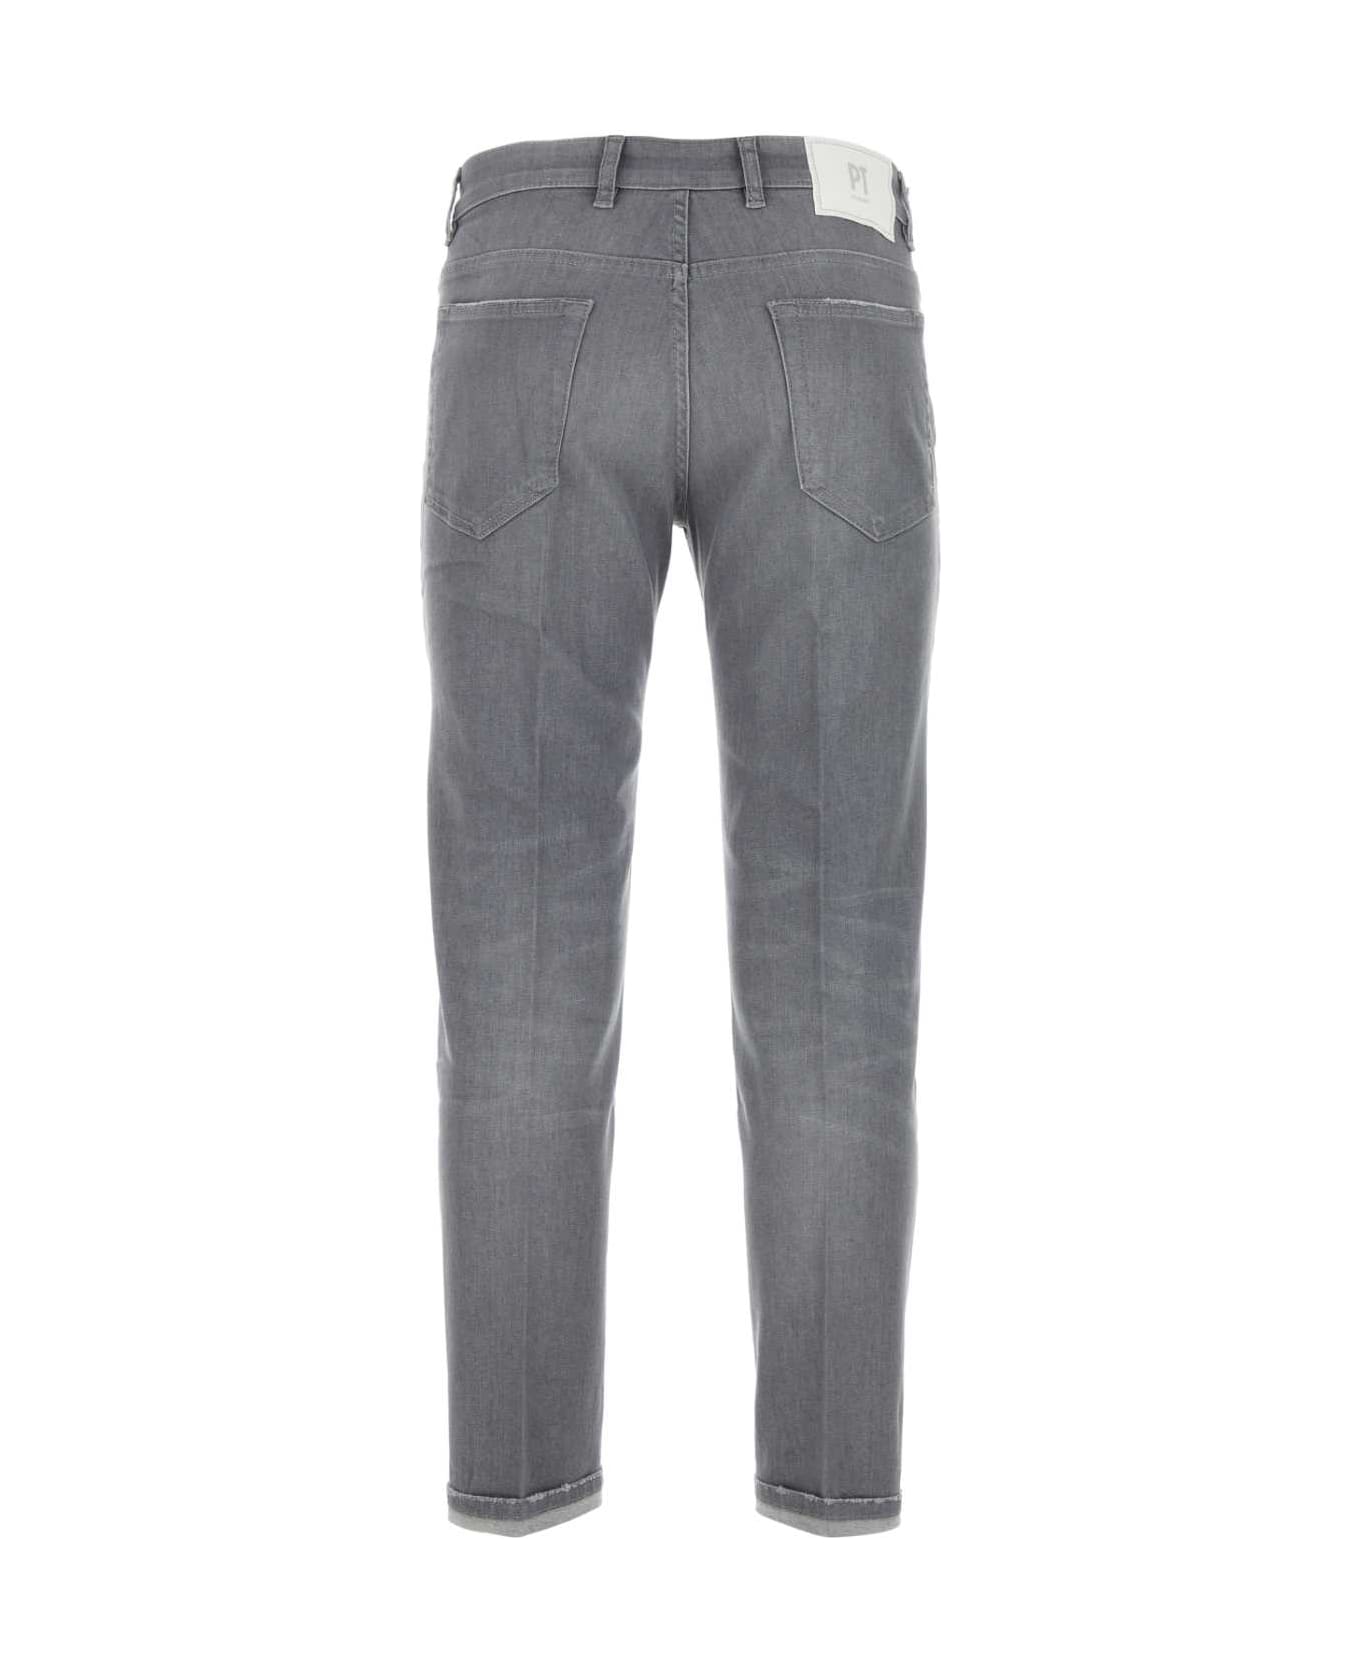 PT Torino Grey Stretch Denim Indie Jeans - GRIGIO デニム